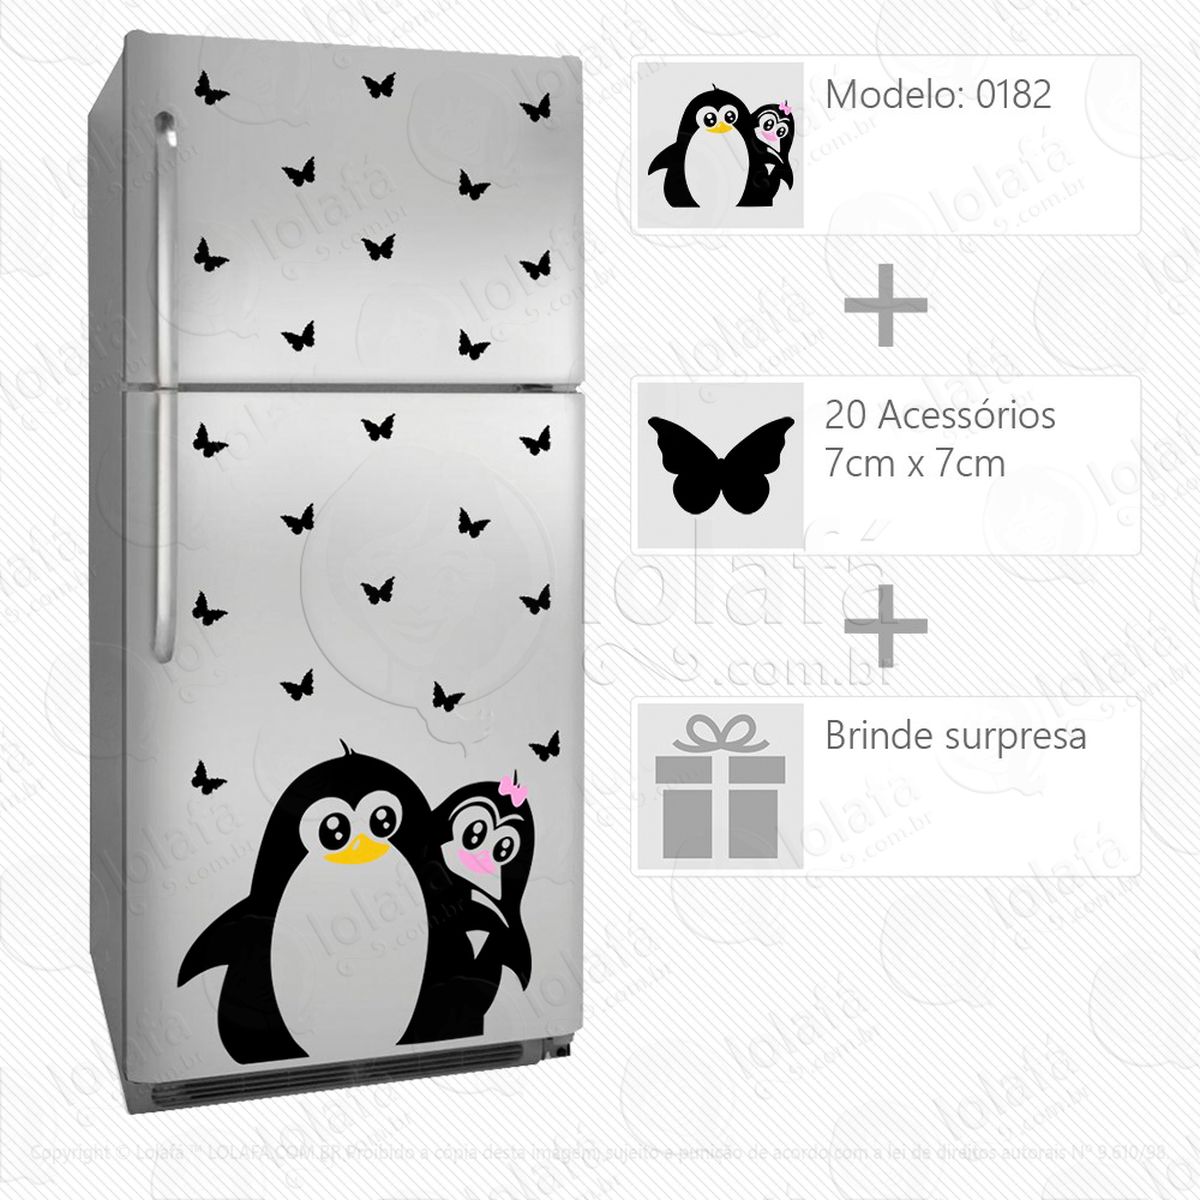 pinguins adesivo para geladeira e frigobar - mod:182